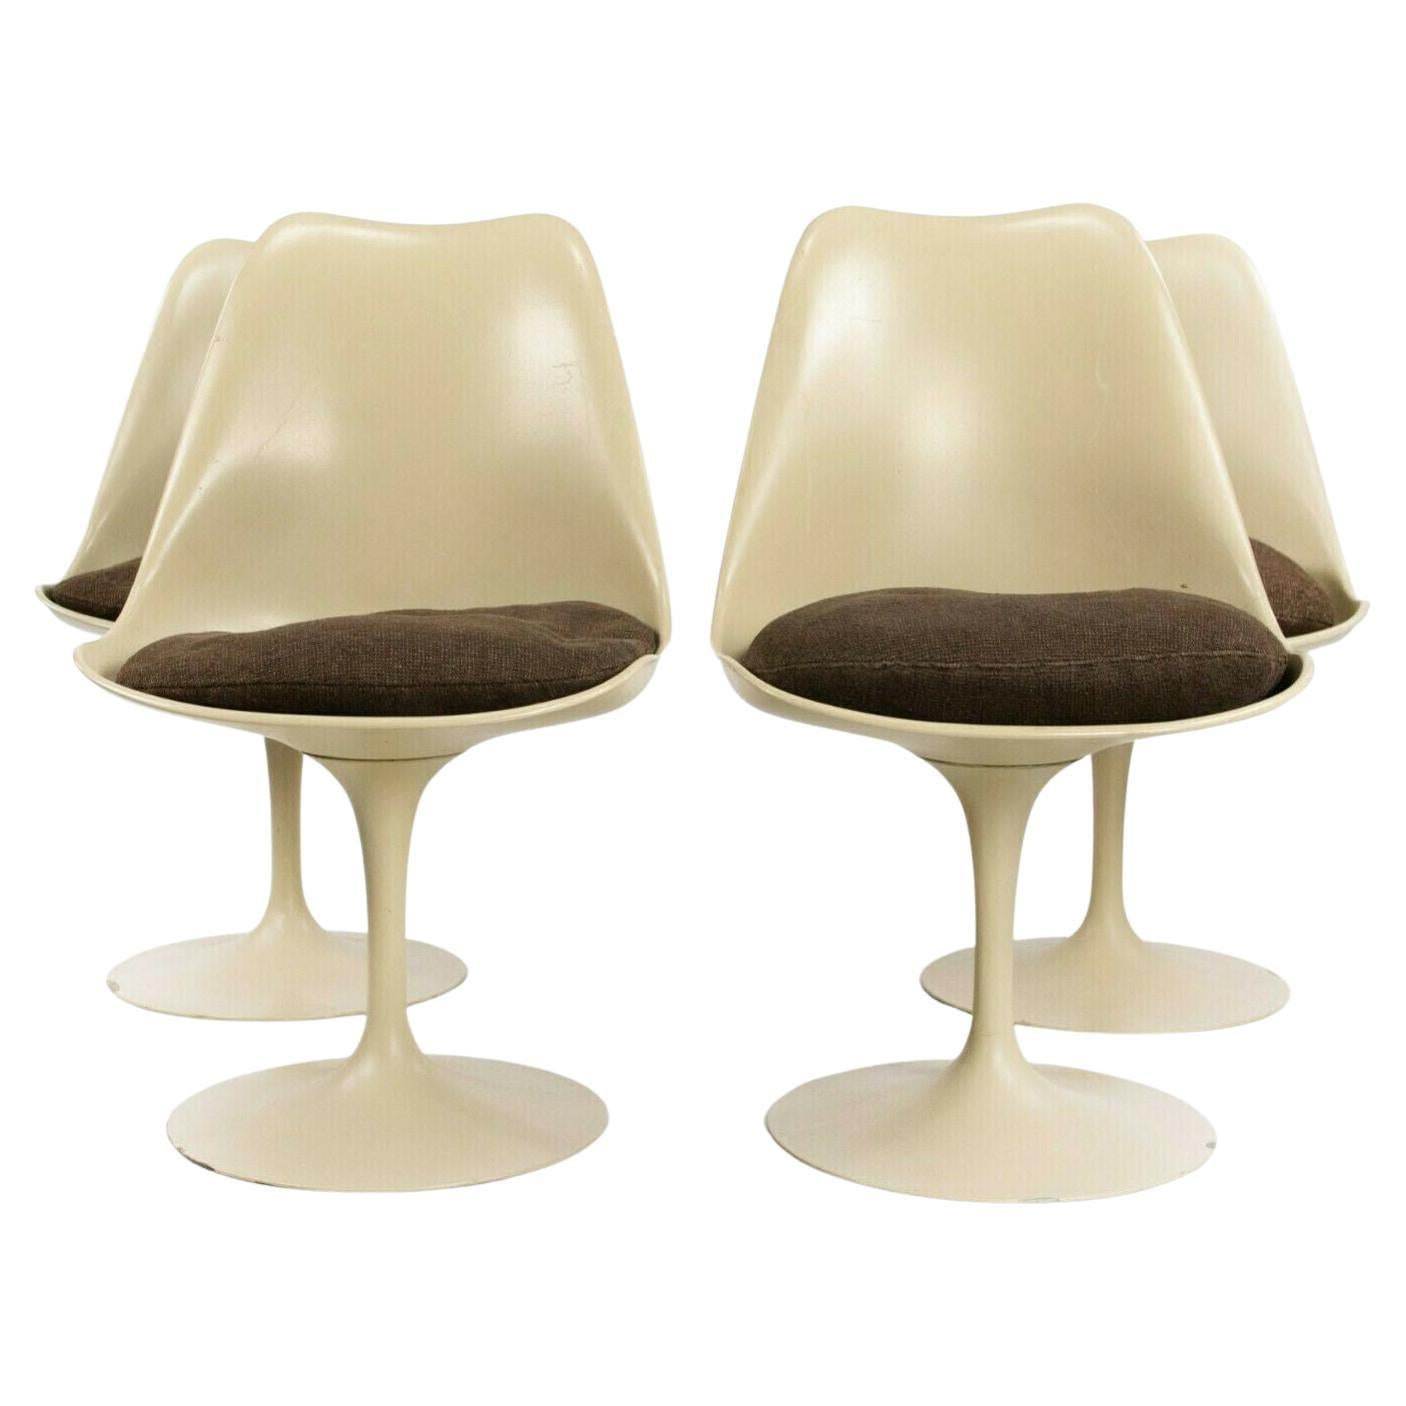 1960er Jahre 4 armlose Tulpenbeistellstühle aus braunem Stoff von Eero Saarinen für Knoll